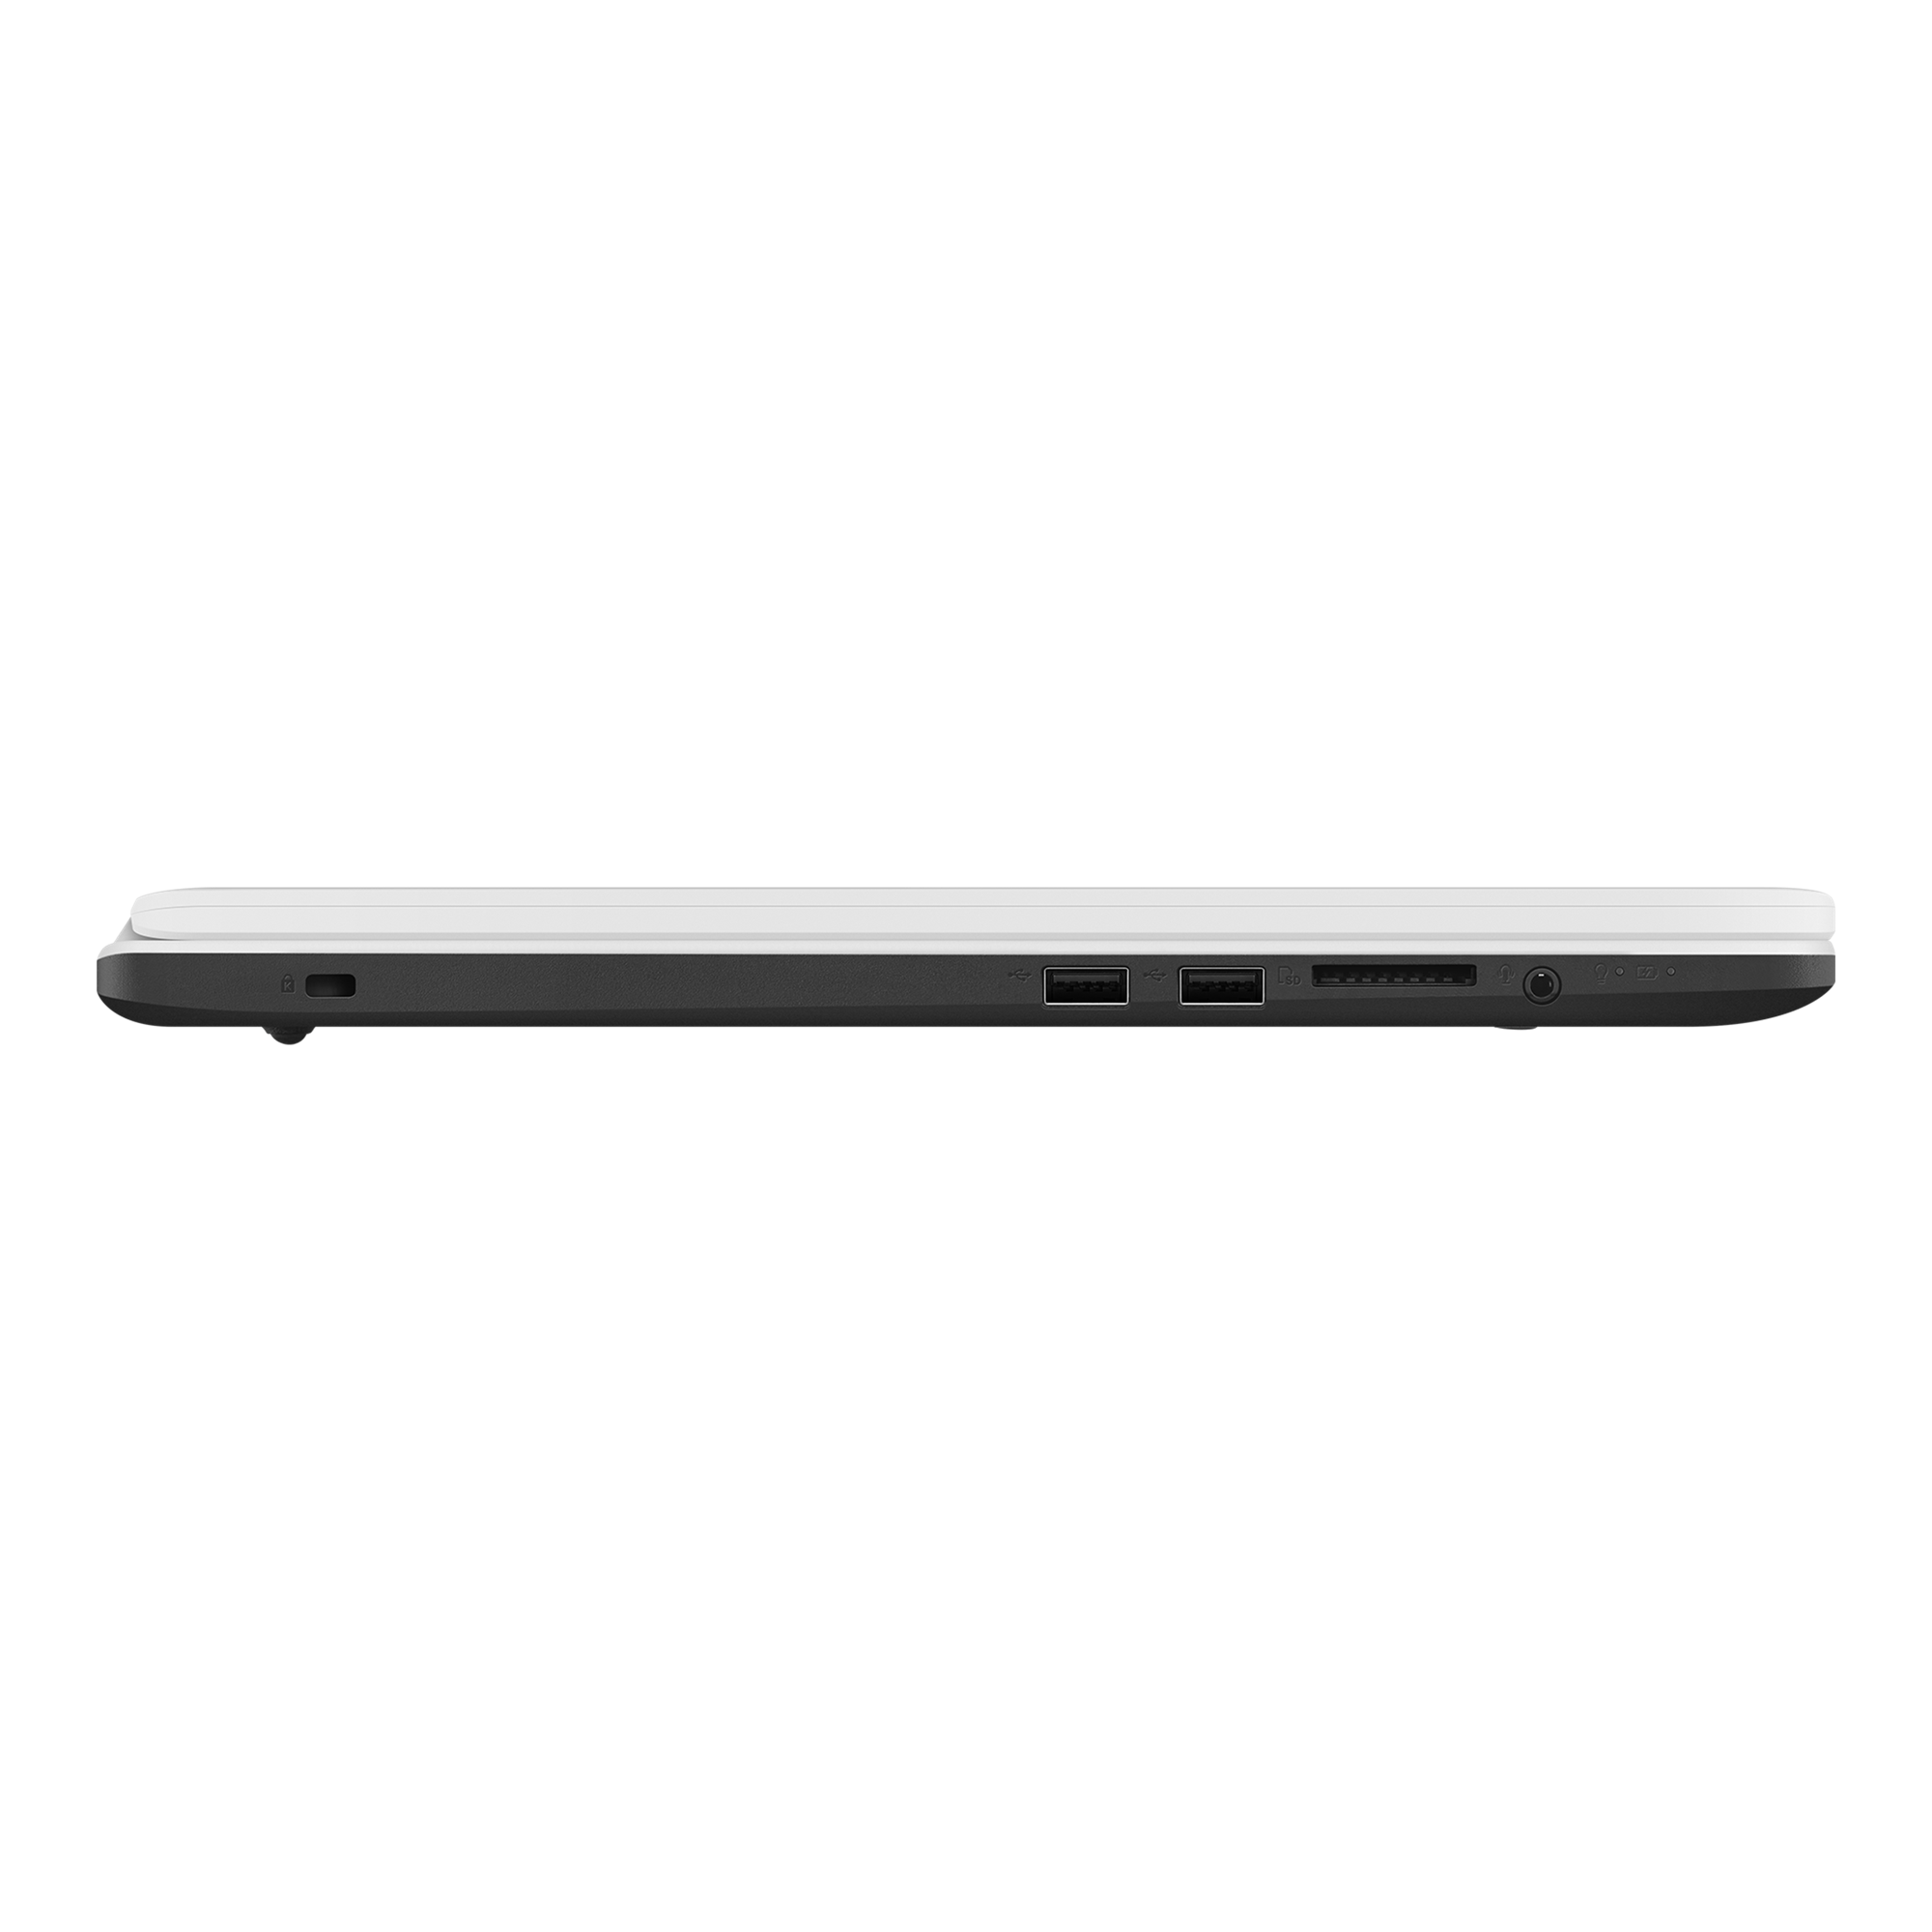 Ноутбук Asus Vivobook 17 M705ba Bx067t Купить